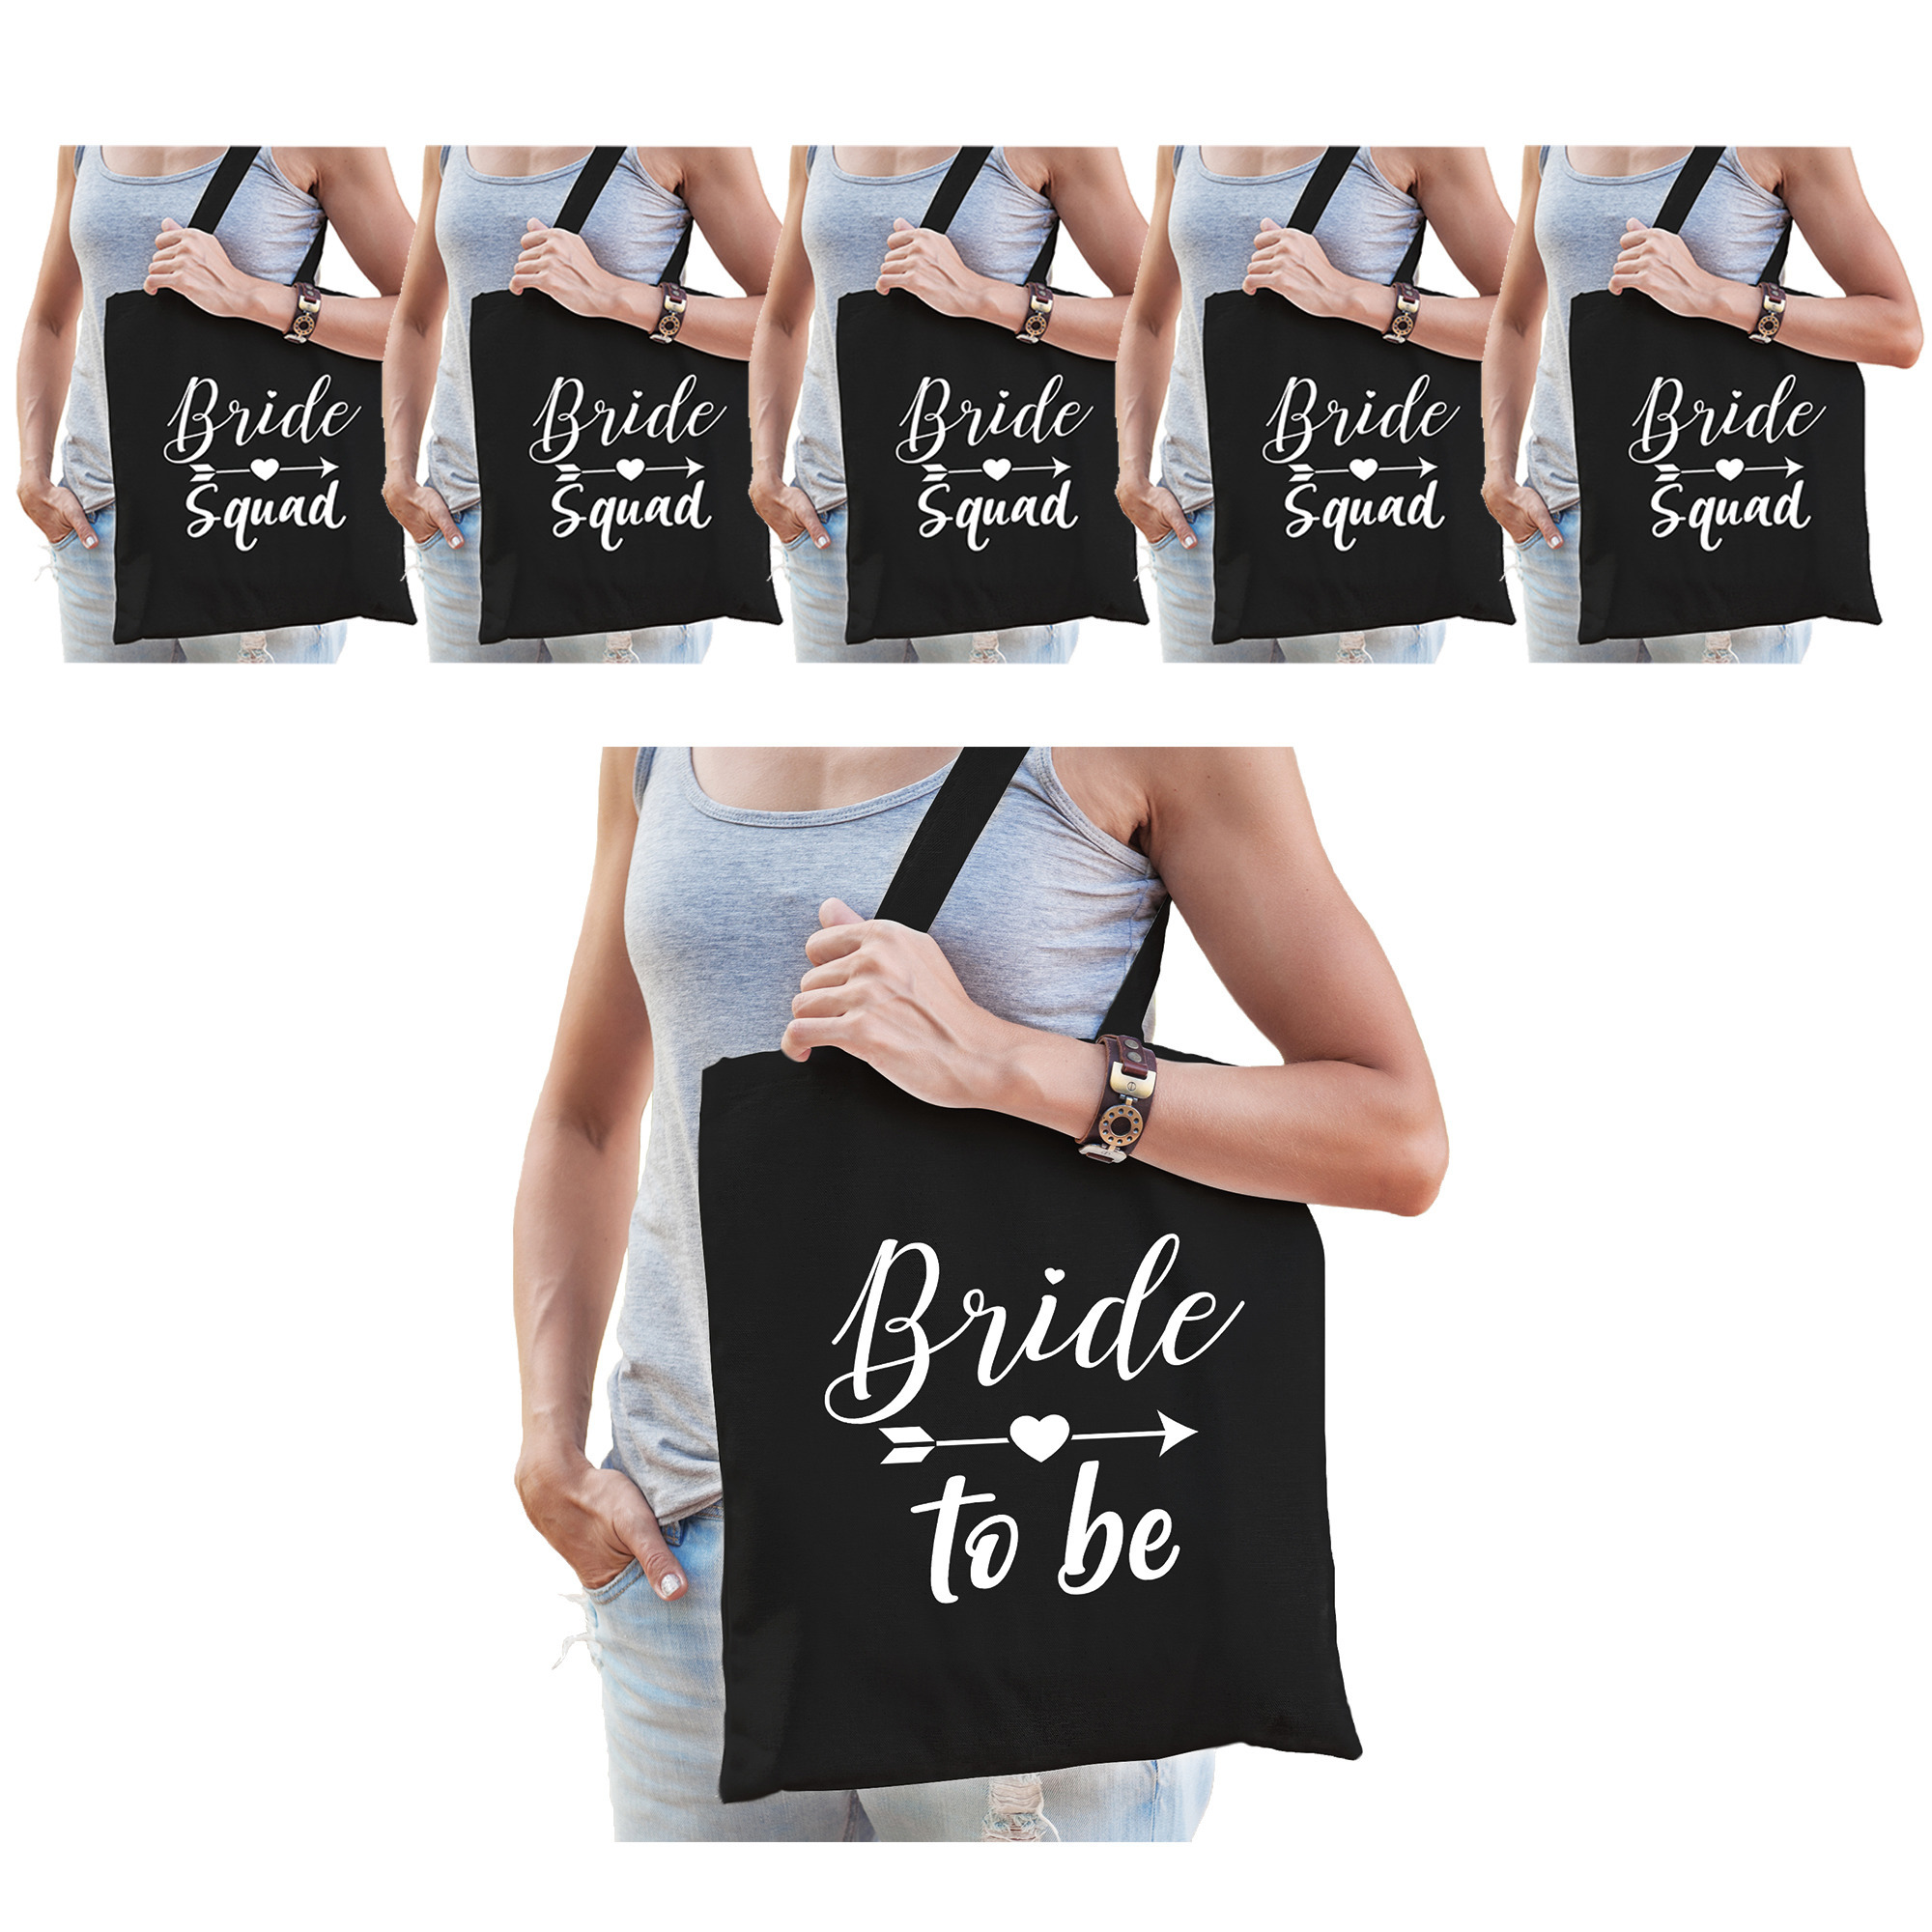 Vrijgezellenfeest dames tasjes/ goodiebag pakket: 1x Bride to Be zwart+ 7x Bride Squad zwart